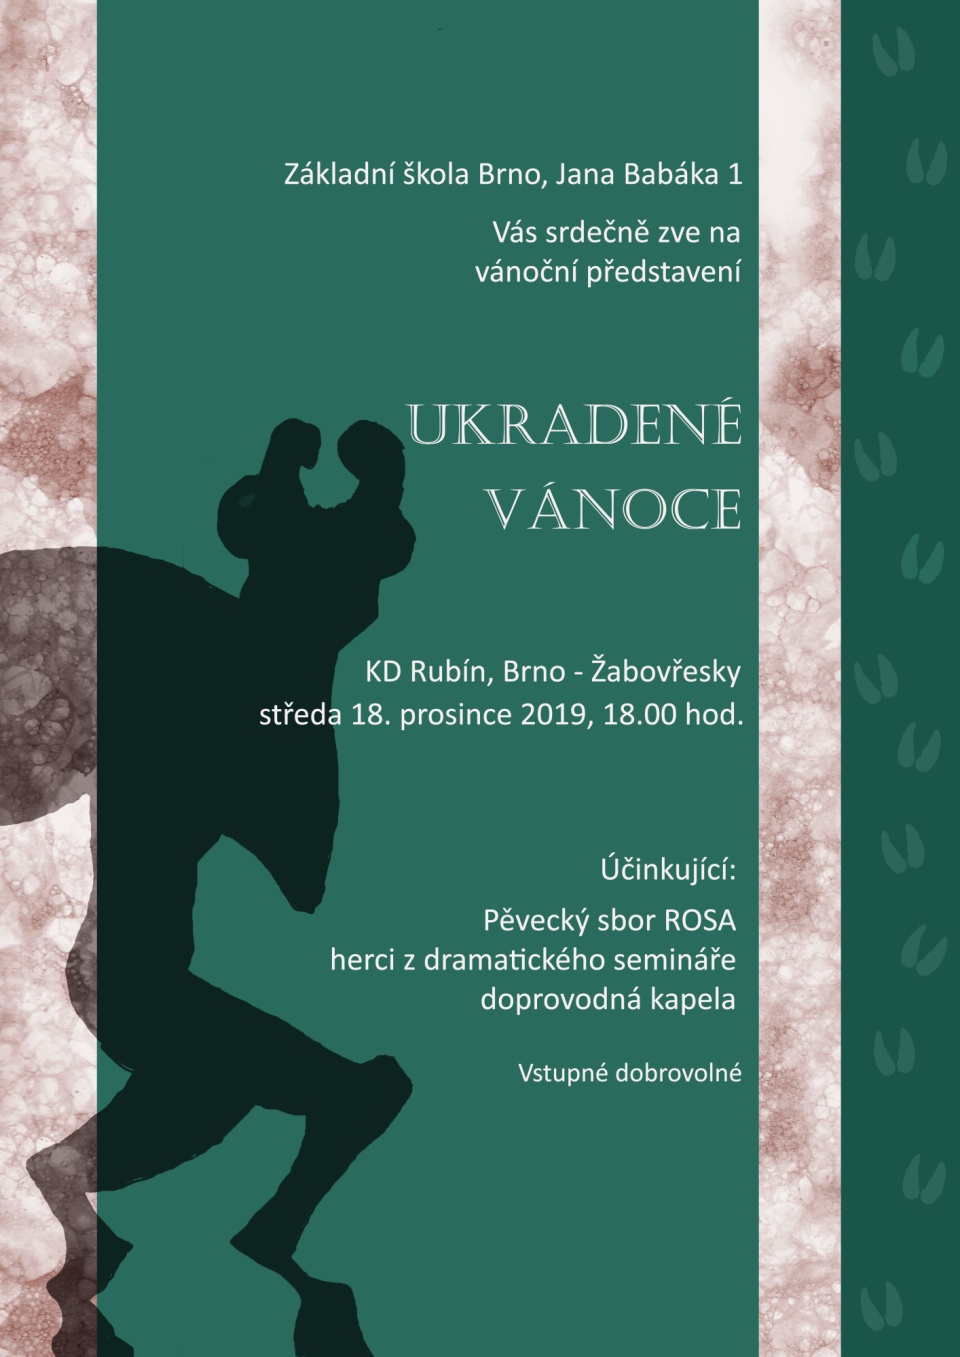 Plakát pro vánoční představení ZŠ Jana Babáka